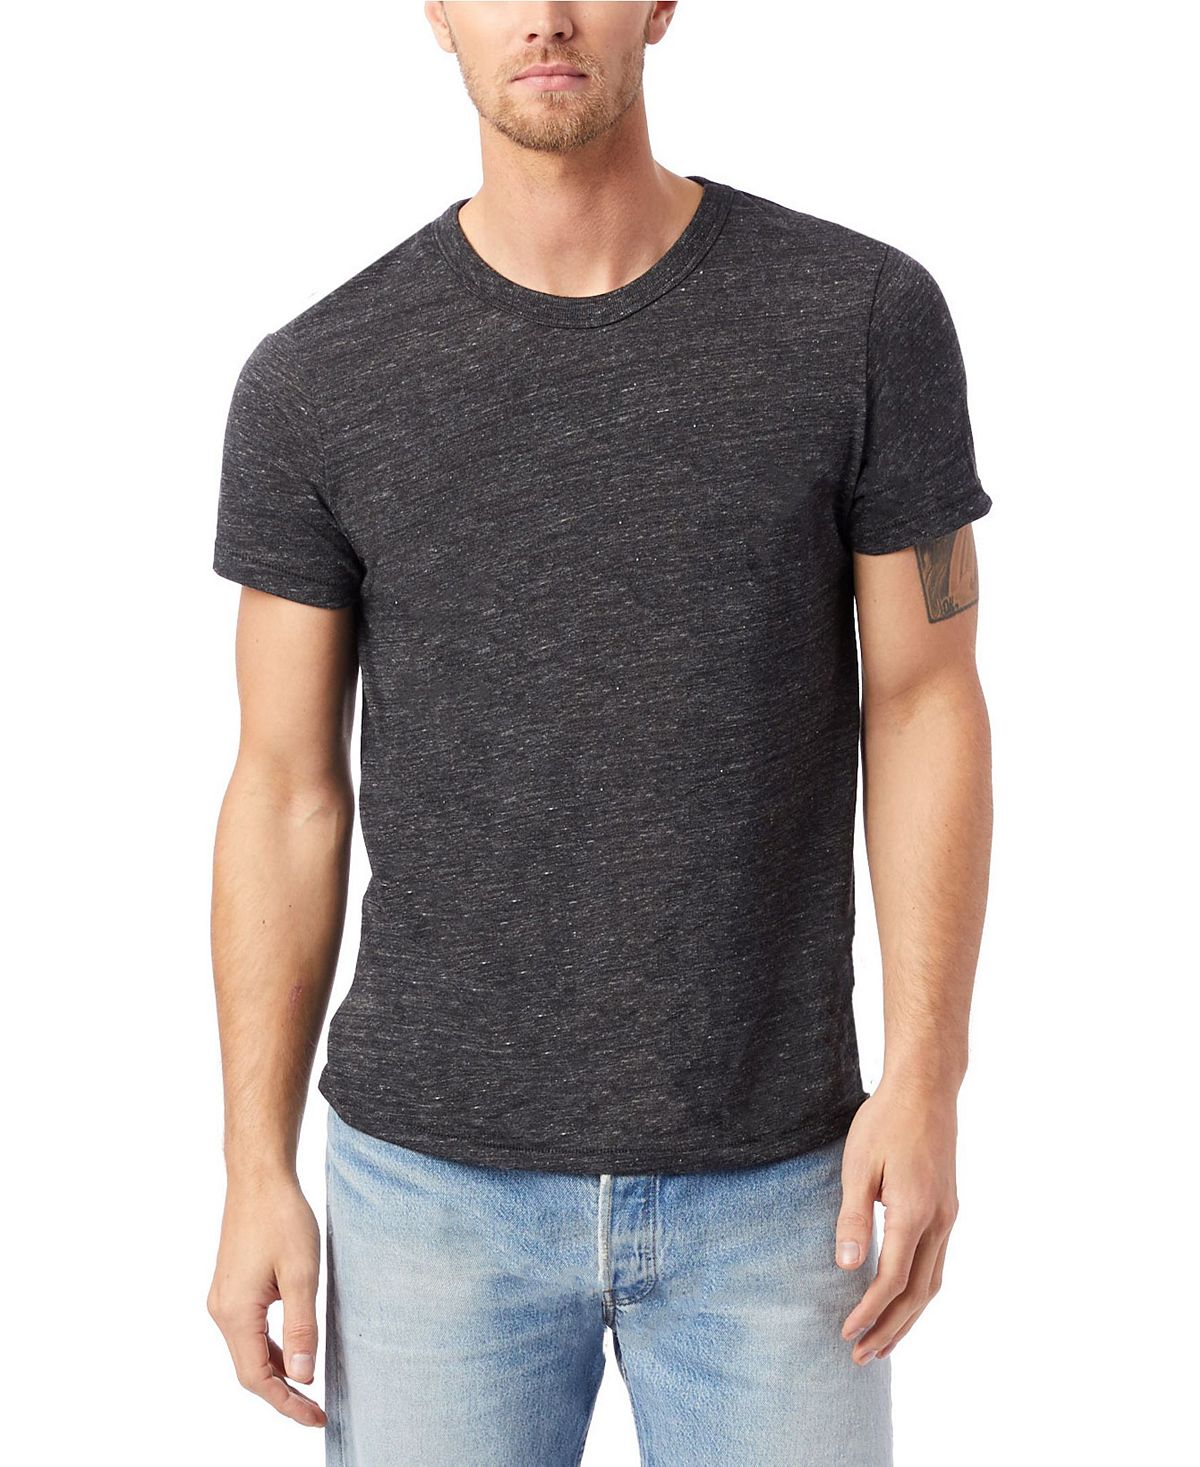 Мужская футболка из эко-джерси с круглым вырезом Alternative Apparel